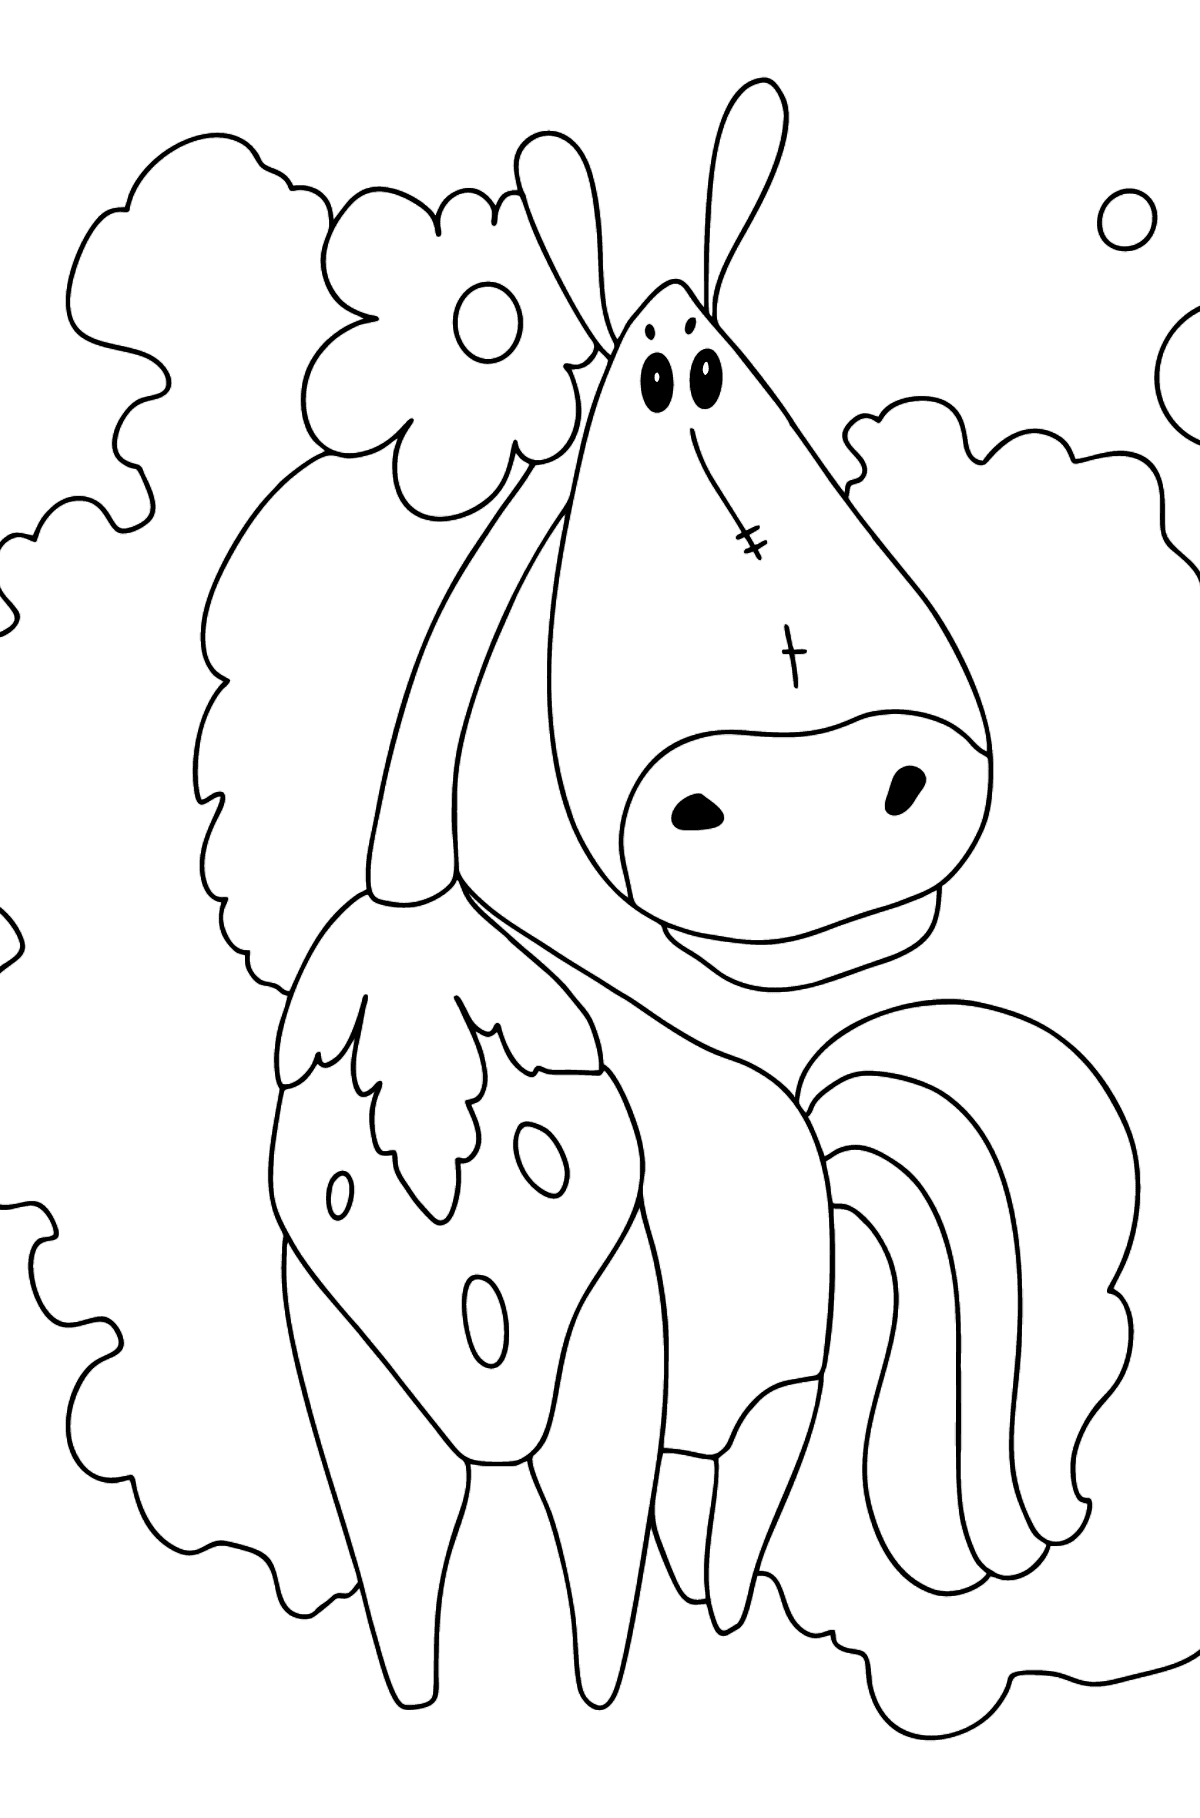 Desenho de cavalo fashionista para colorir difícil - Imagens para Colorir para Crianças